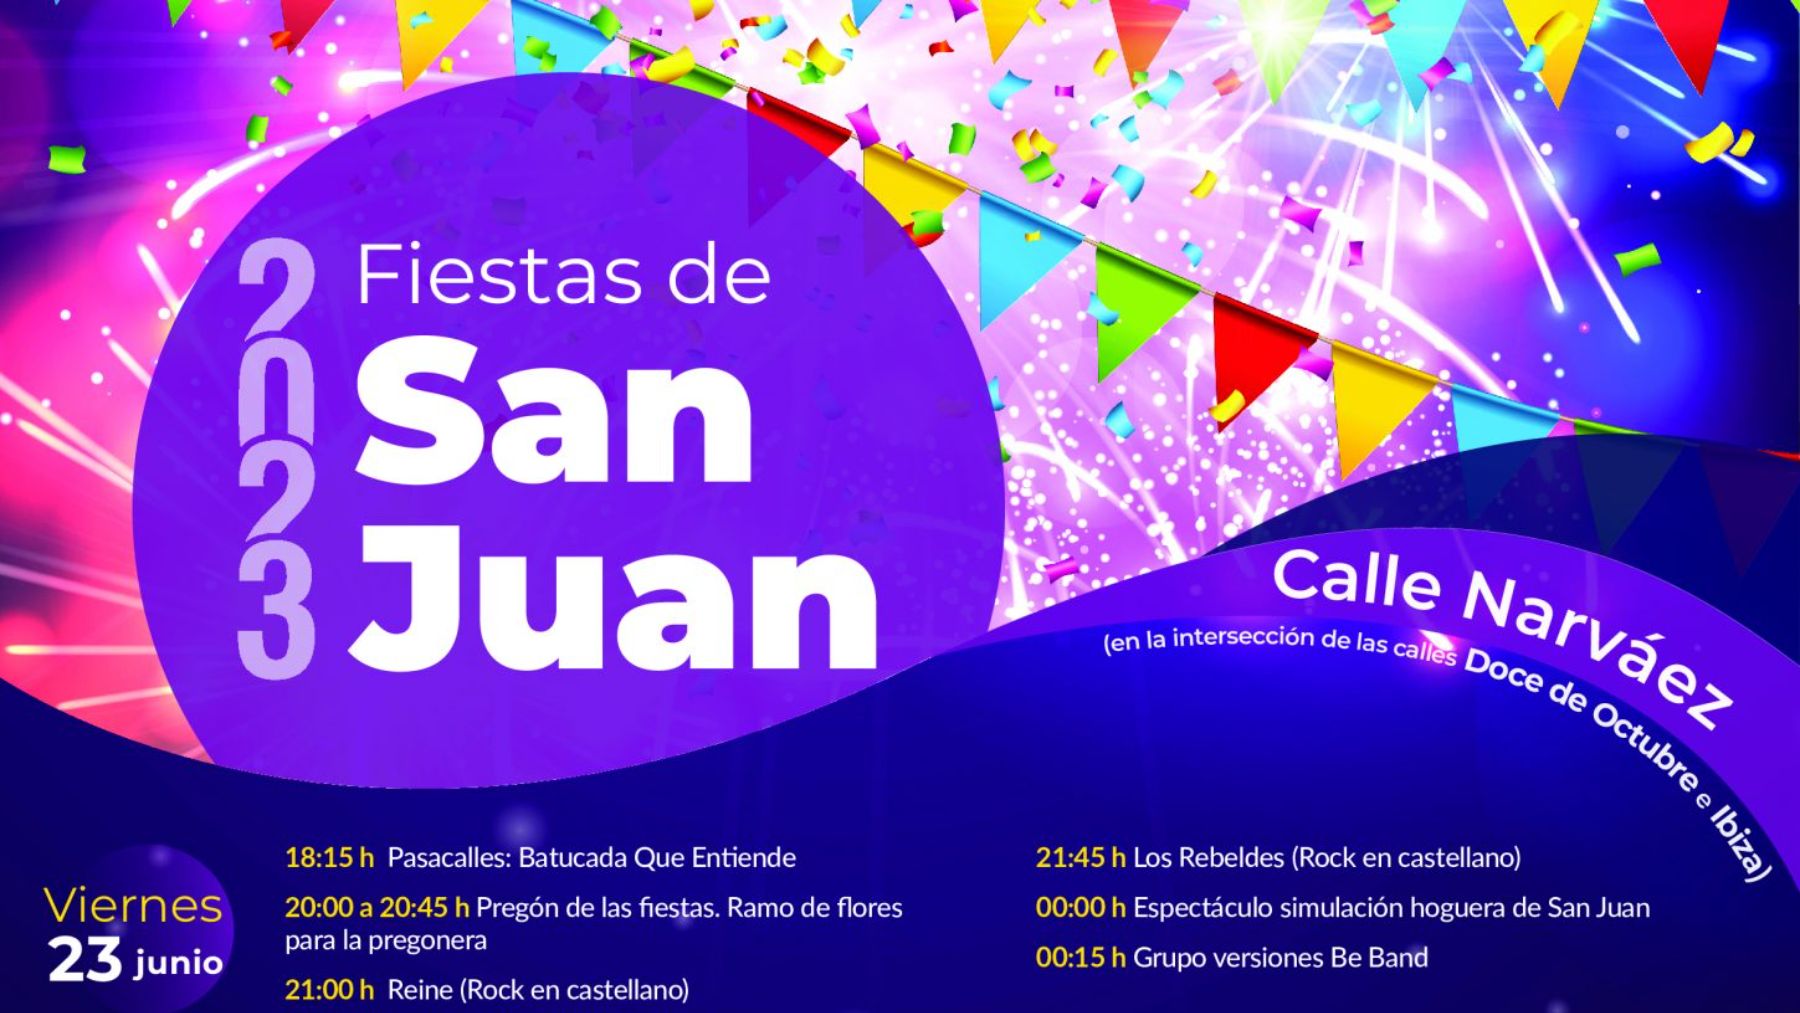 Descubre la programación de las Fiestas de San Juan Retiro 2023 al completo